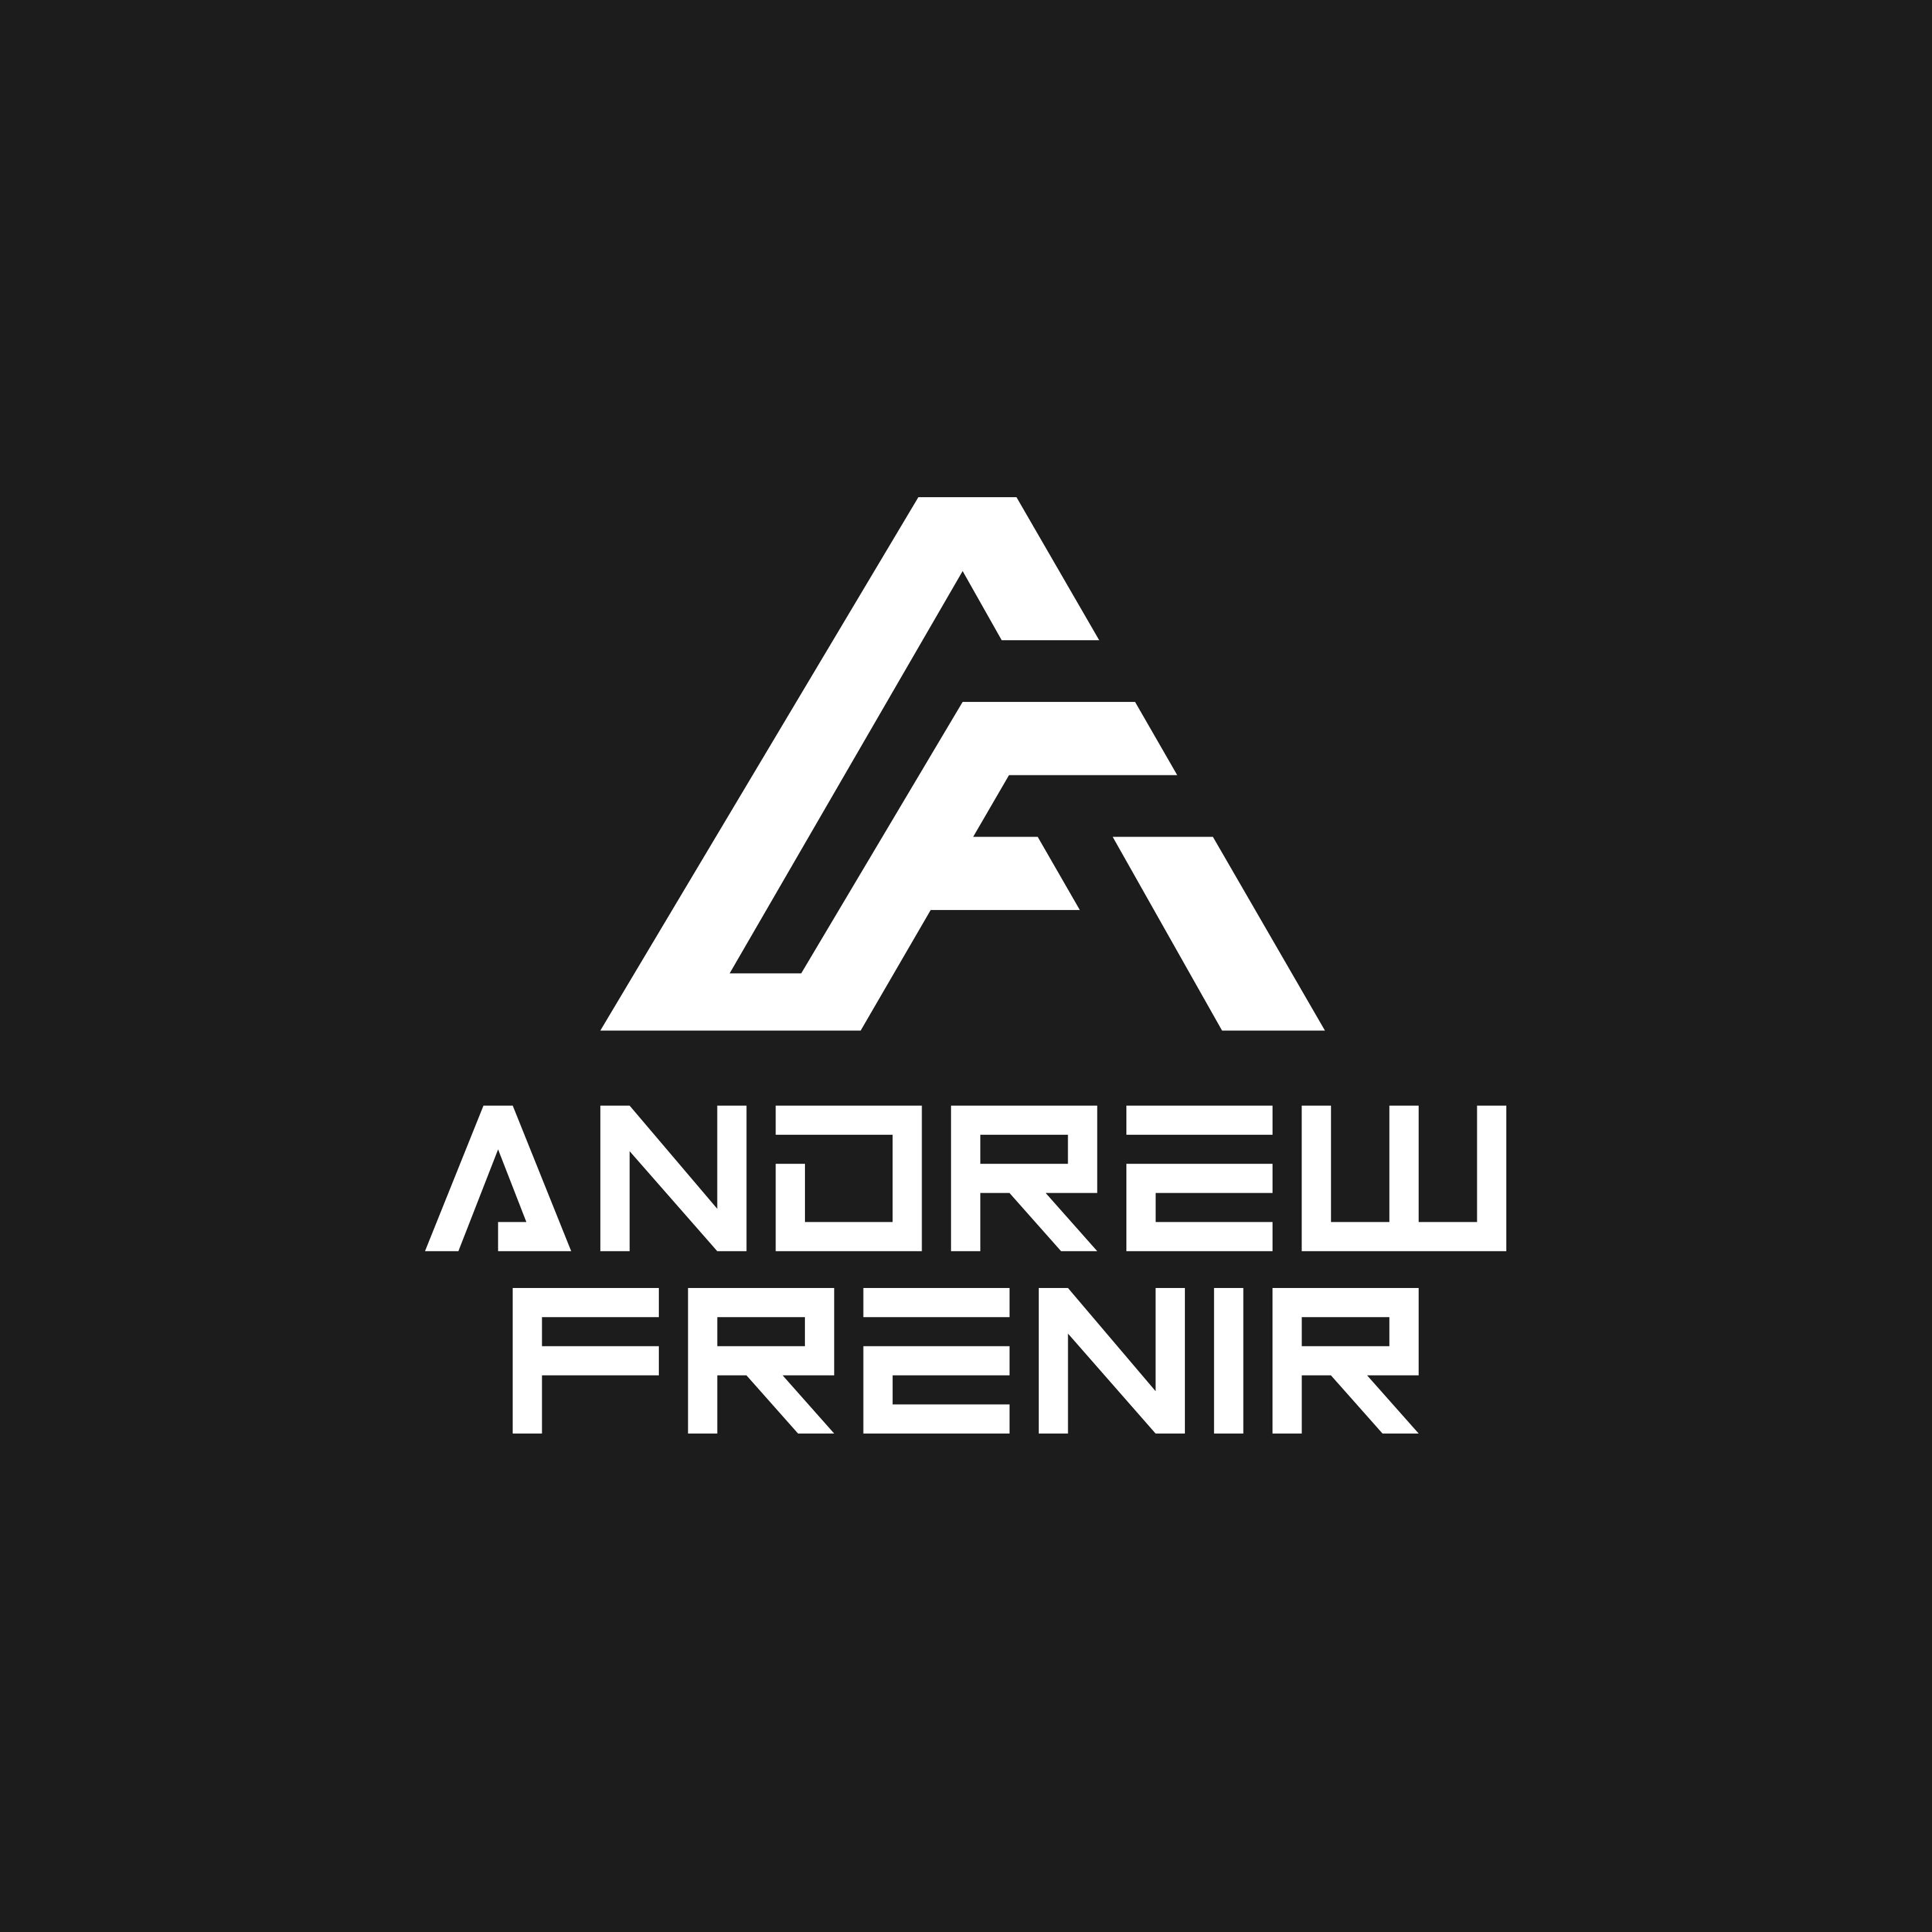 Andrew Frenir